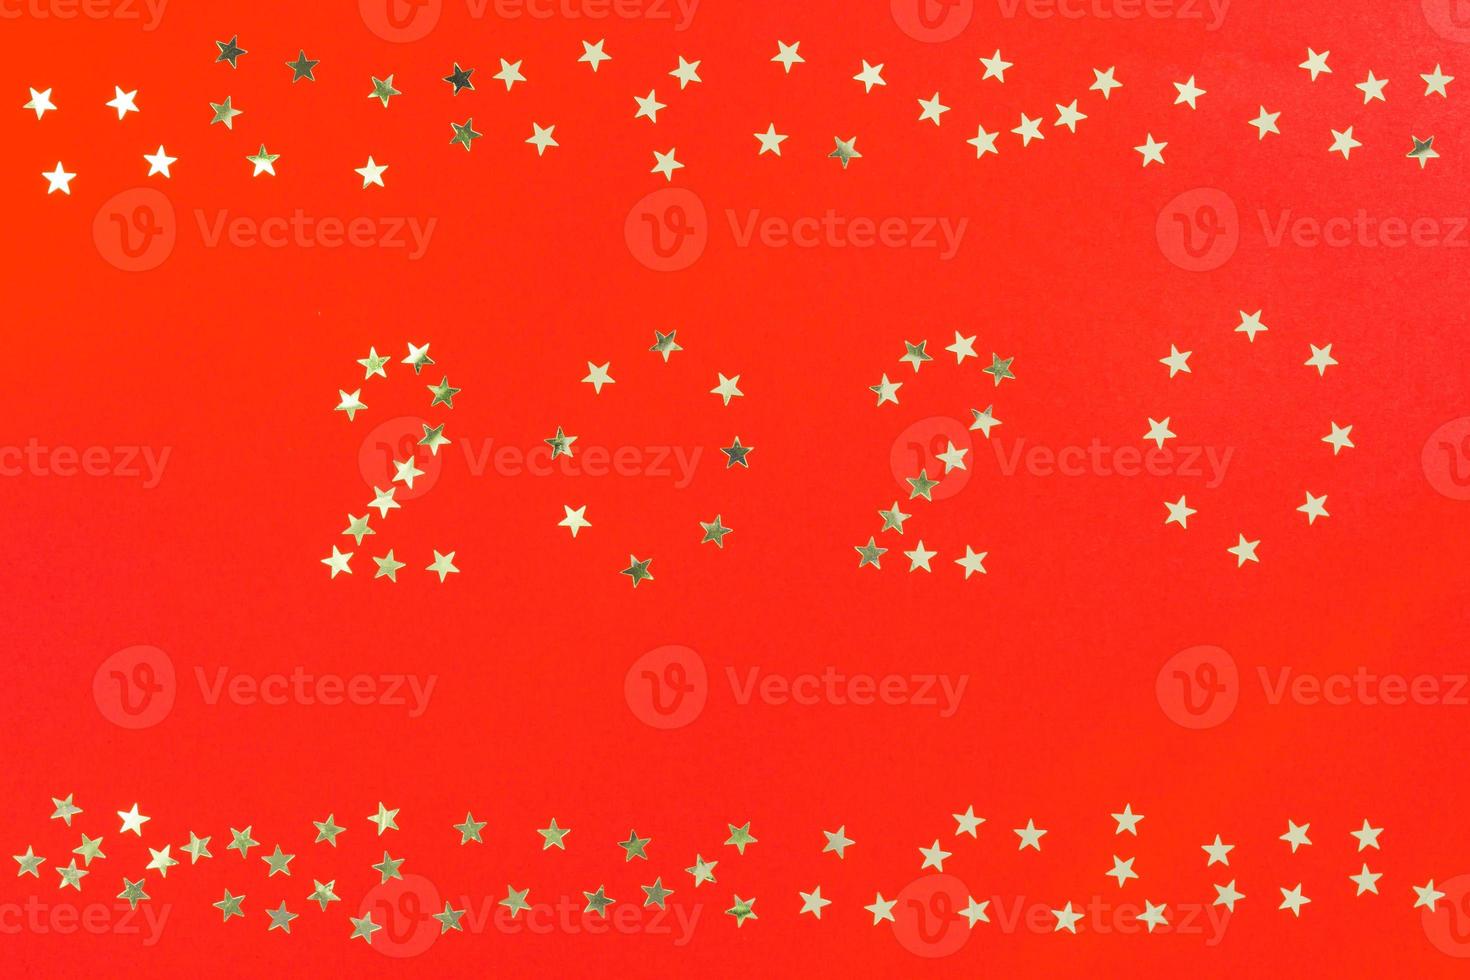 gott nytt år 2020 vinter semester gratulationskort designmall. fest affisch, banderoll eller inbjudan silver glittrande stjärnor konfetti glitter dekoration på röd bakgrund foto